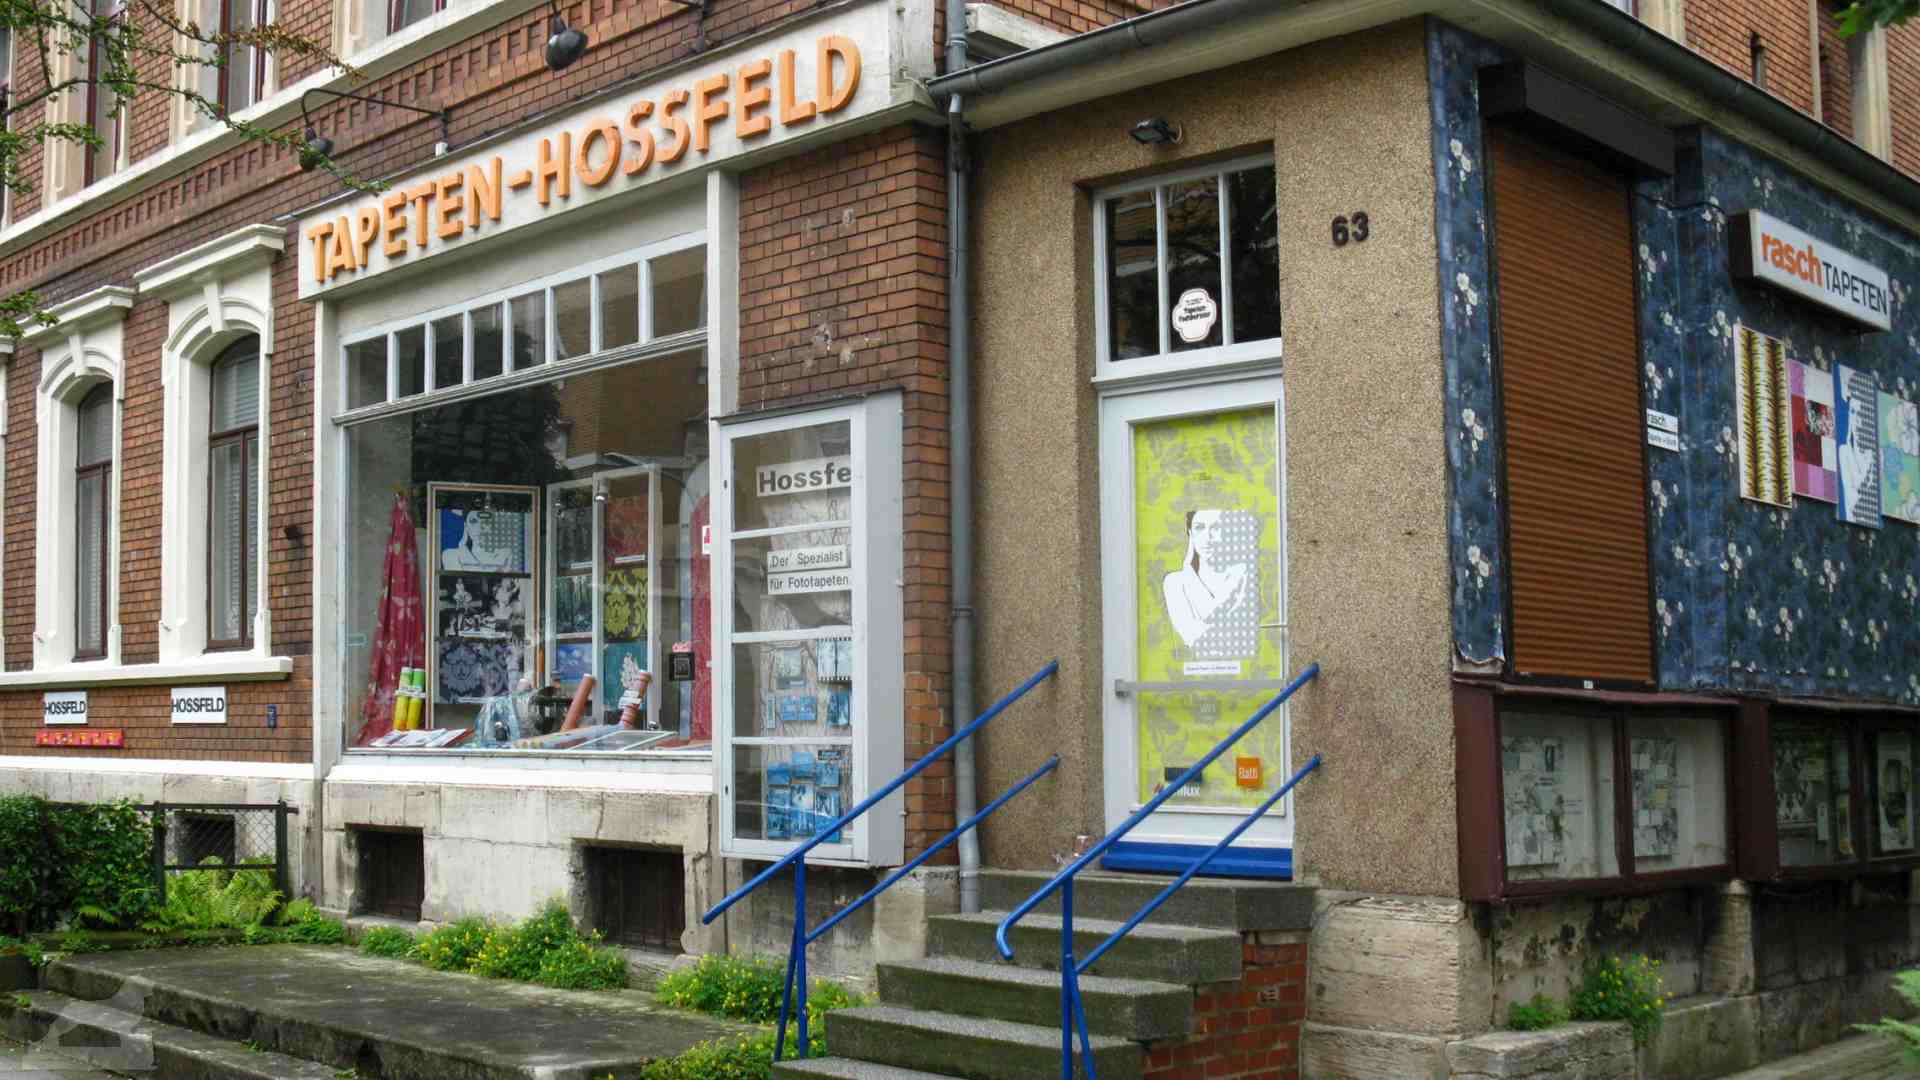 Tapeten Hossfeld in der Fasanenstraße